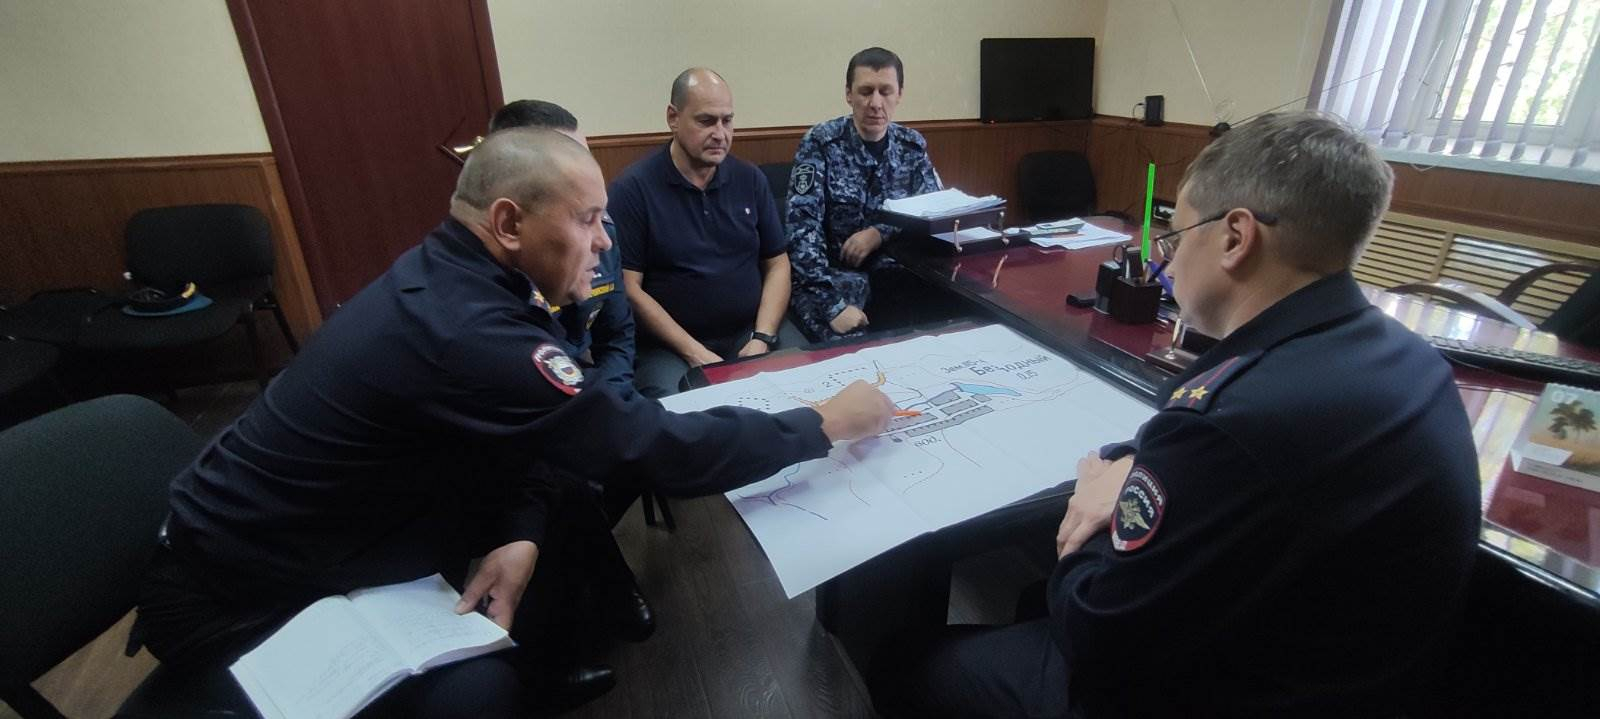 Антитеррористическое учение «Пункт-2022» в Челябинской области